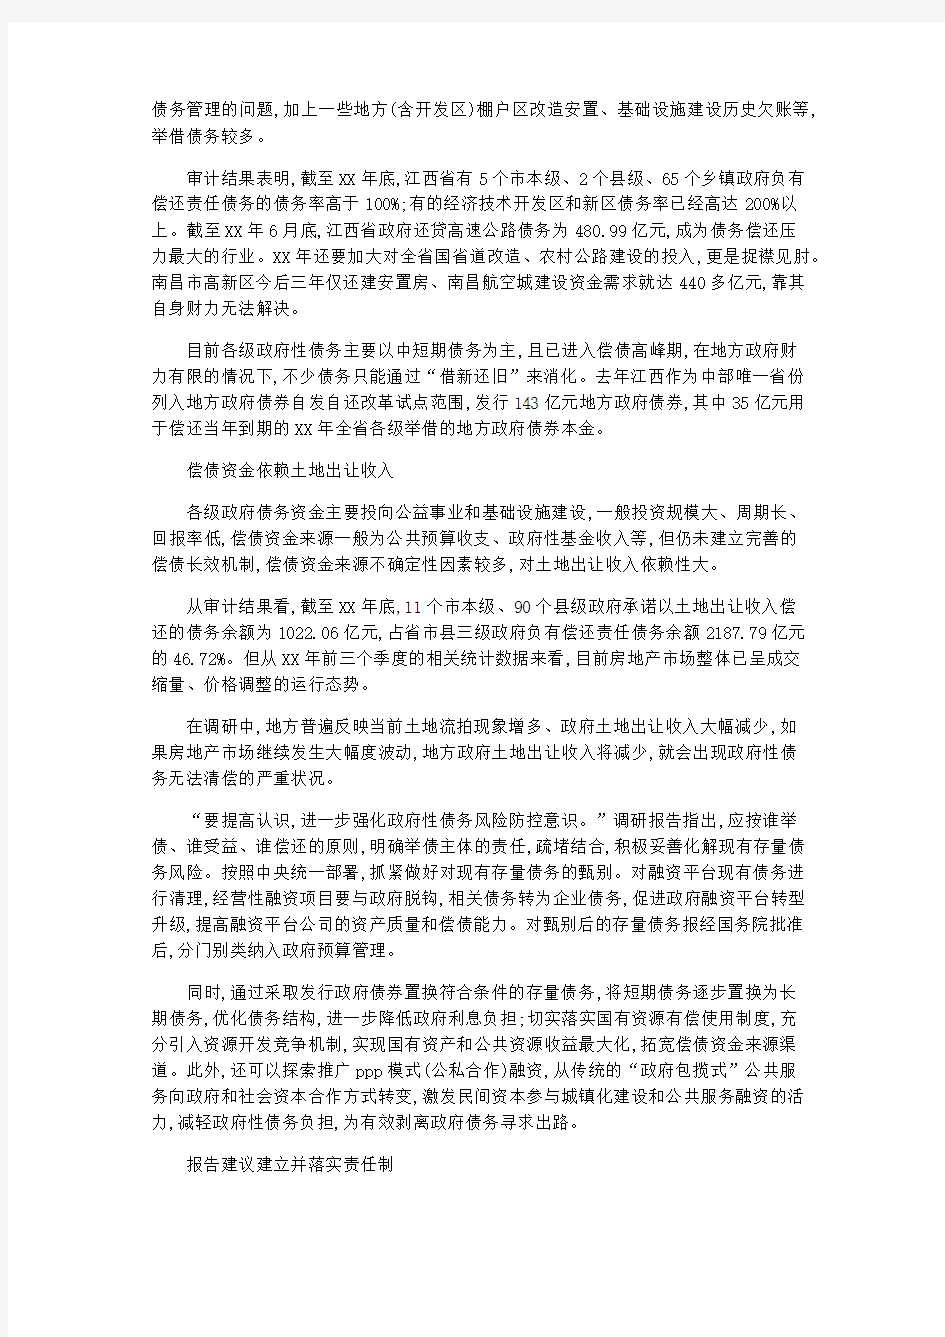 总结报告-2019年江西省人大常委会调研报告呼吁进一步强化风险防控意识 精品